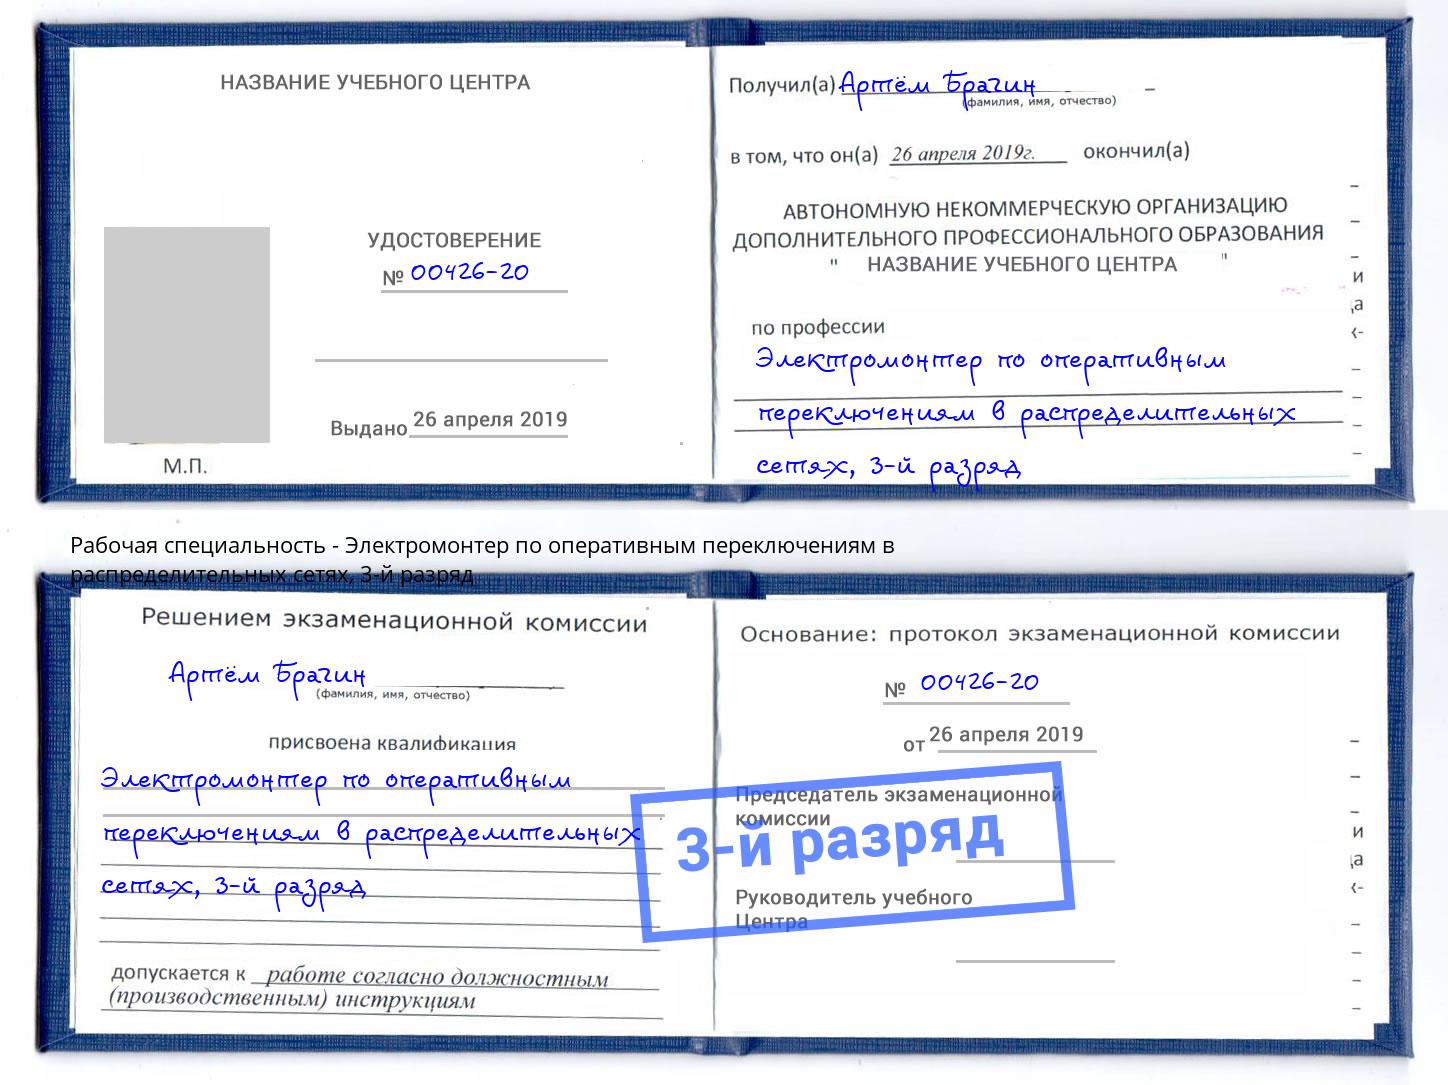 корочка 3-й разряд Электромонтер по оперативным переключениям в распределительных сетях Ангарск